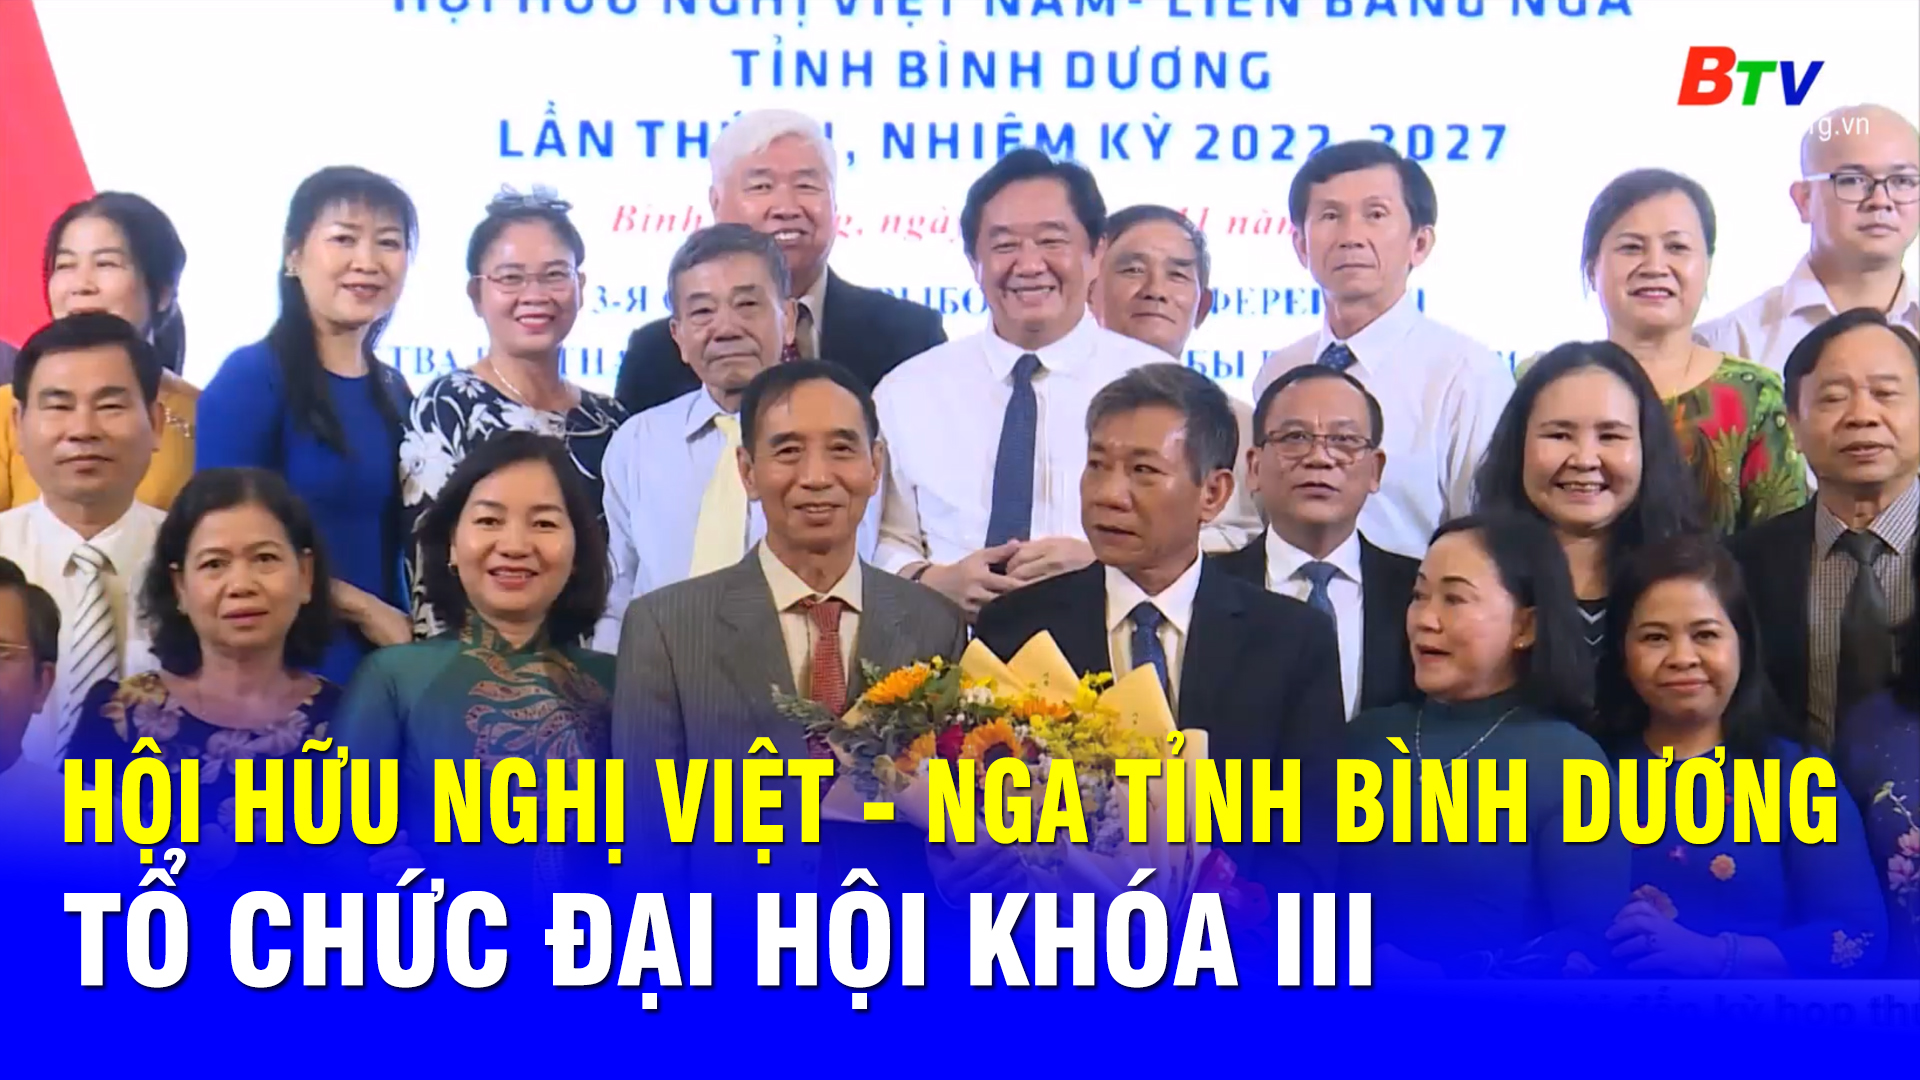 Hội hữu nghị Việt - Nga tỉnh Bình Dương tổ chức đại hội khóa III